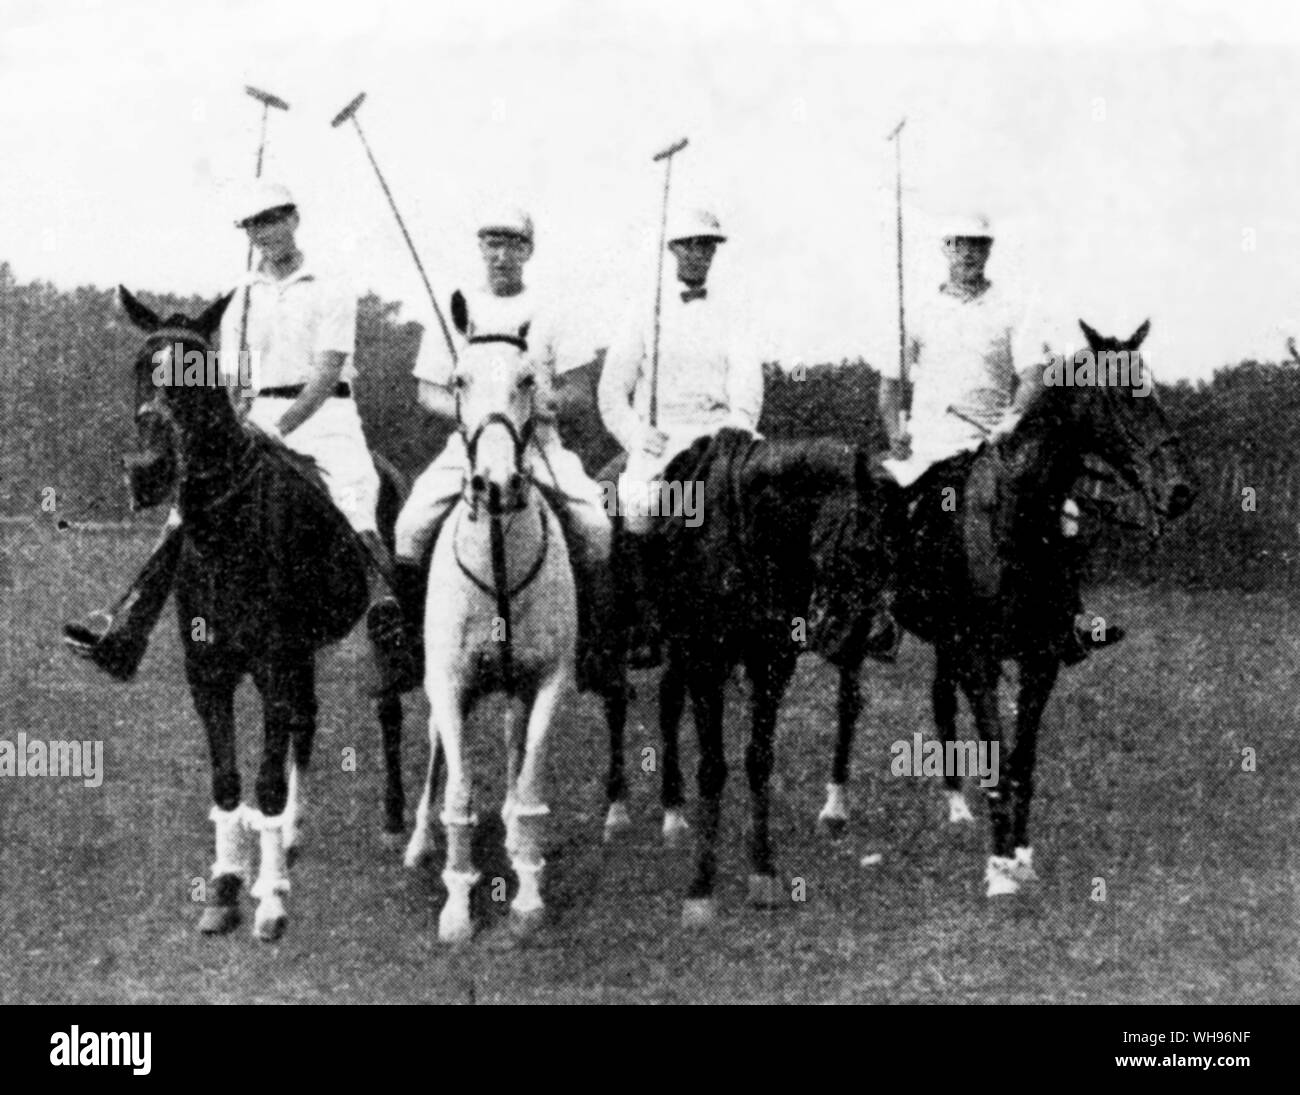 Frankreich, Paris Olympics, 1924: United States (USA) Polo Team kam an zweiter Stelle auf der olympischen Wettbewerb. l-r: E.Boescke, T. Hitchcock (Kapitän), F. Roe, R. Wanamaker. Stockfoto